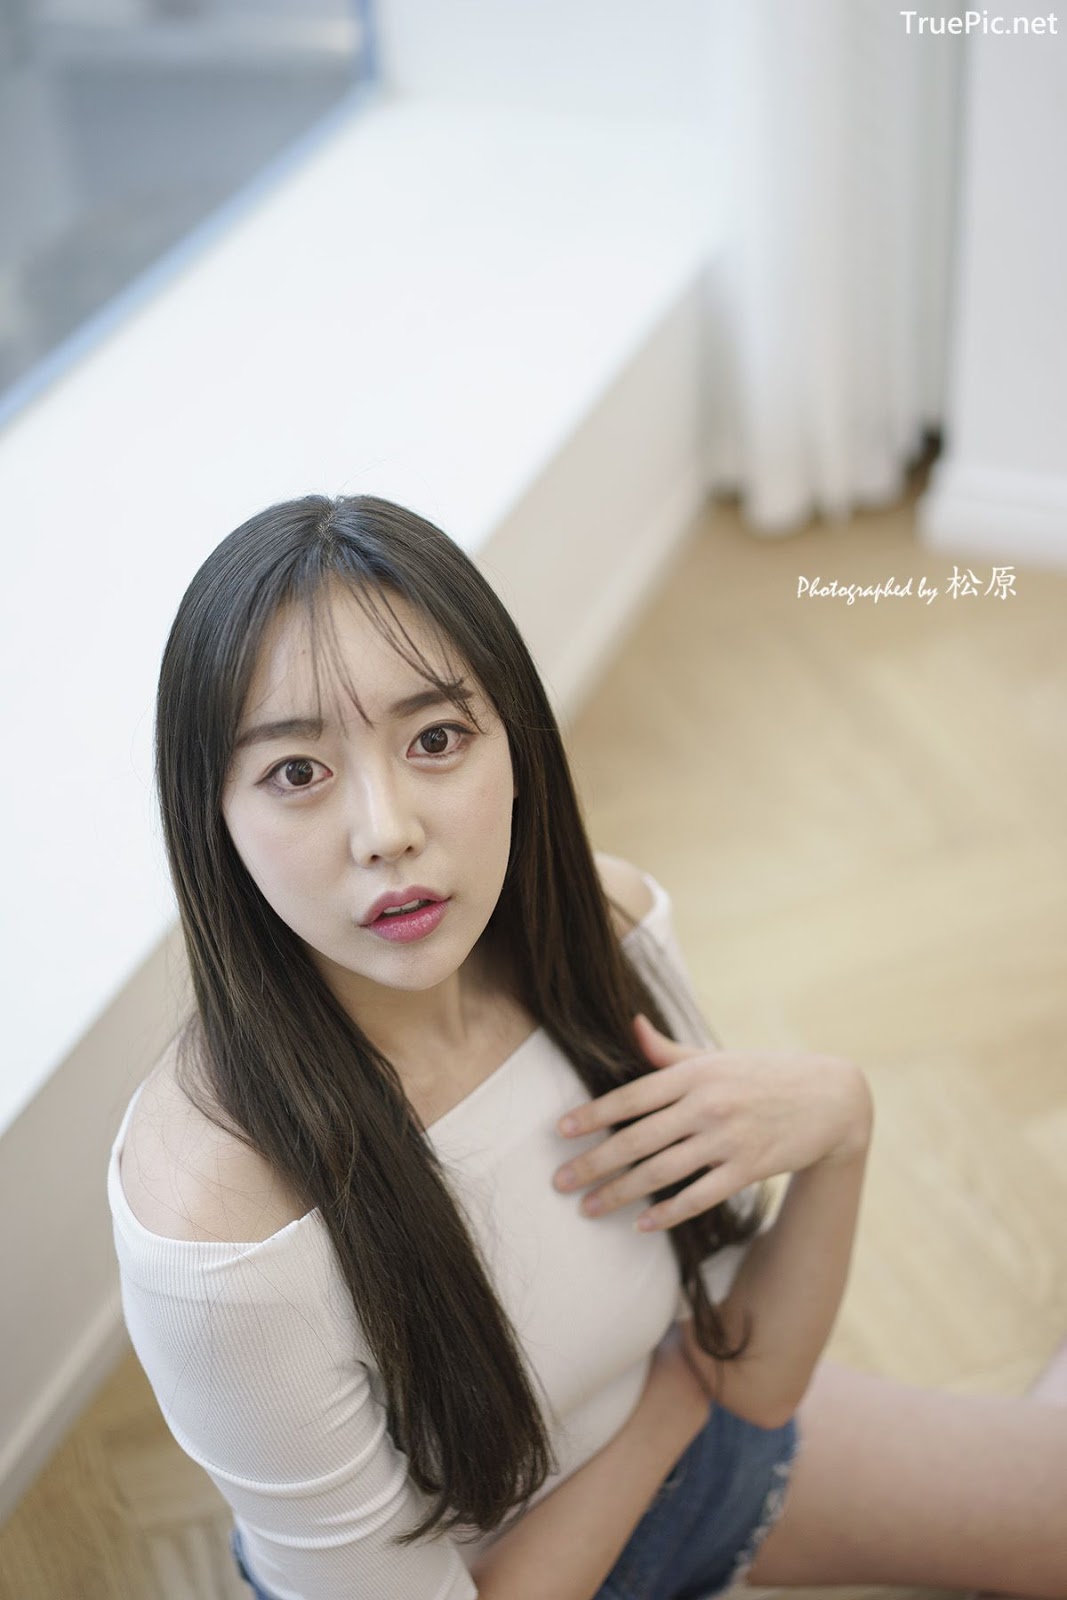 Image-Korean-Hot-Model-Go-Eun-Yang-Indoor-Photoshoot-Collection-TruePic.net- Picture-54